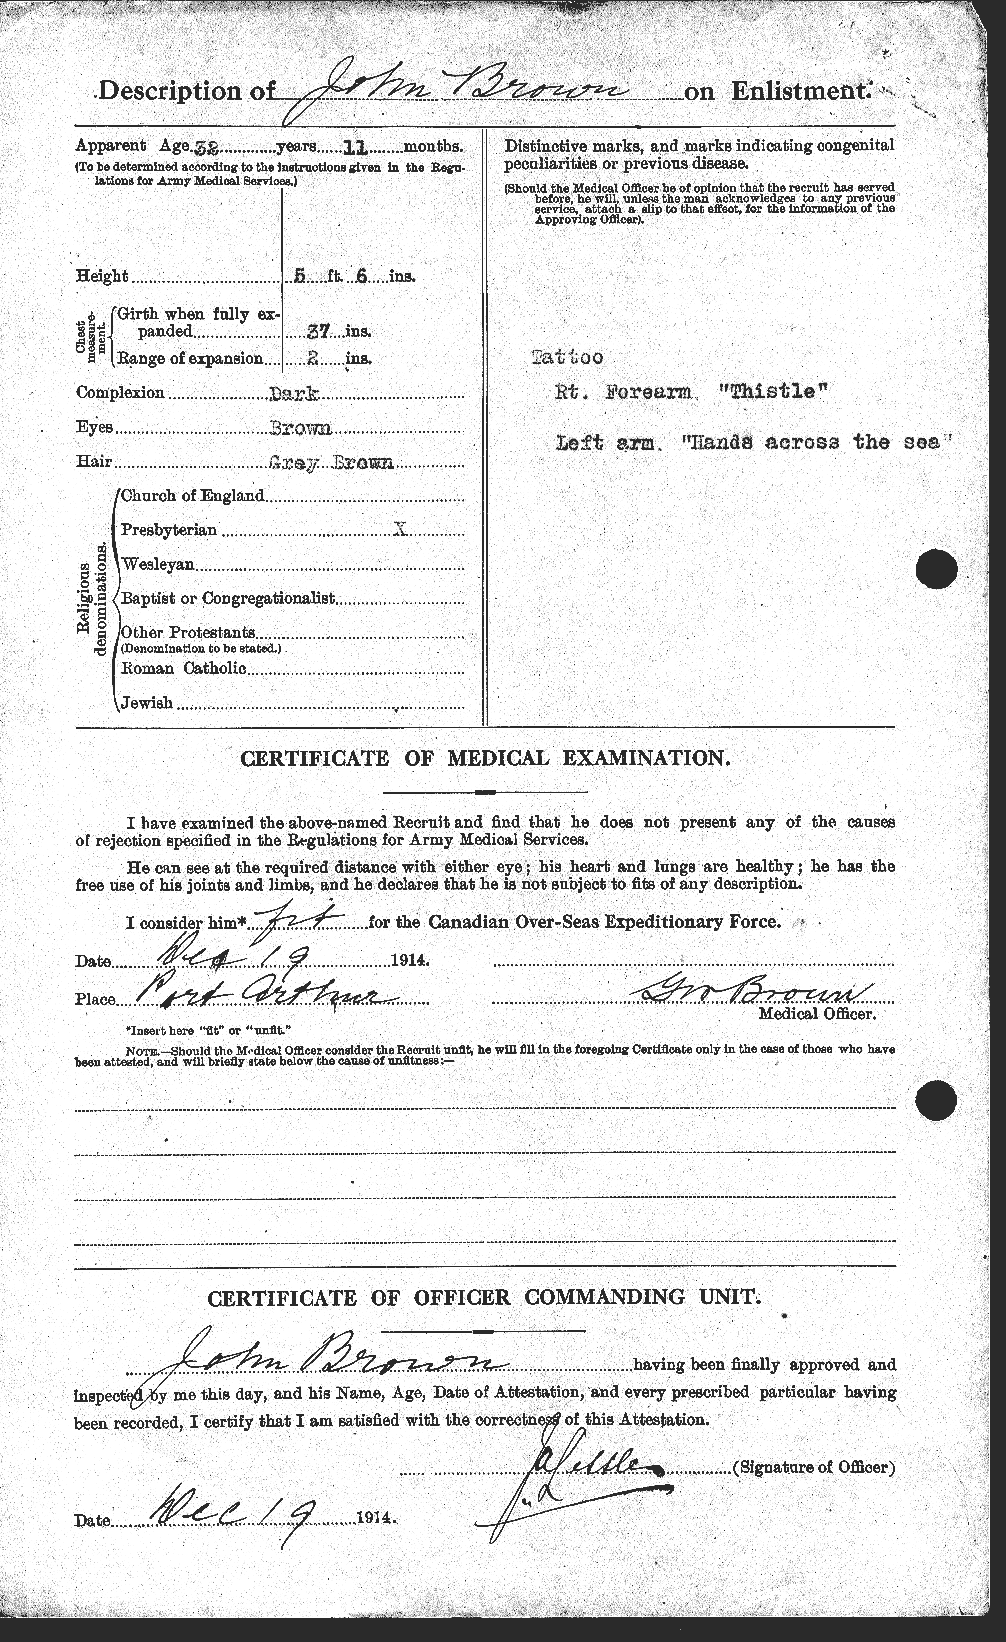 Dossiers du Personnel de la Première Guerre mondiale - CEC 264532b